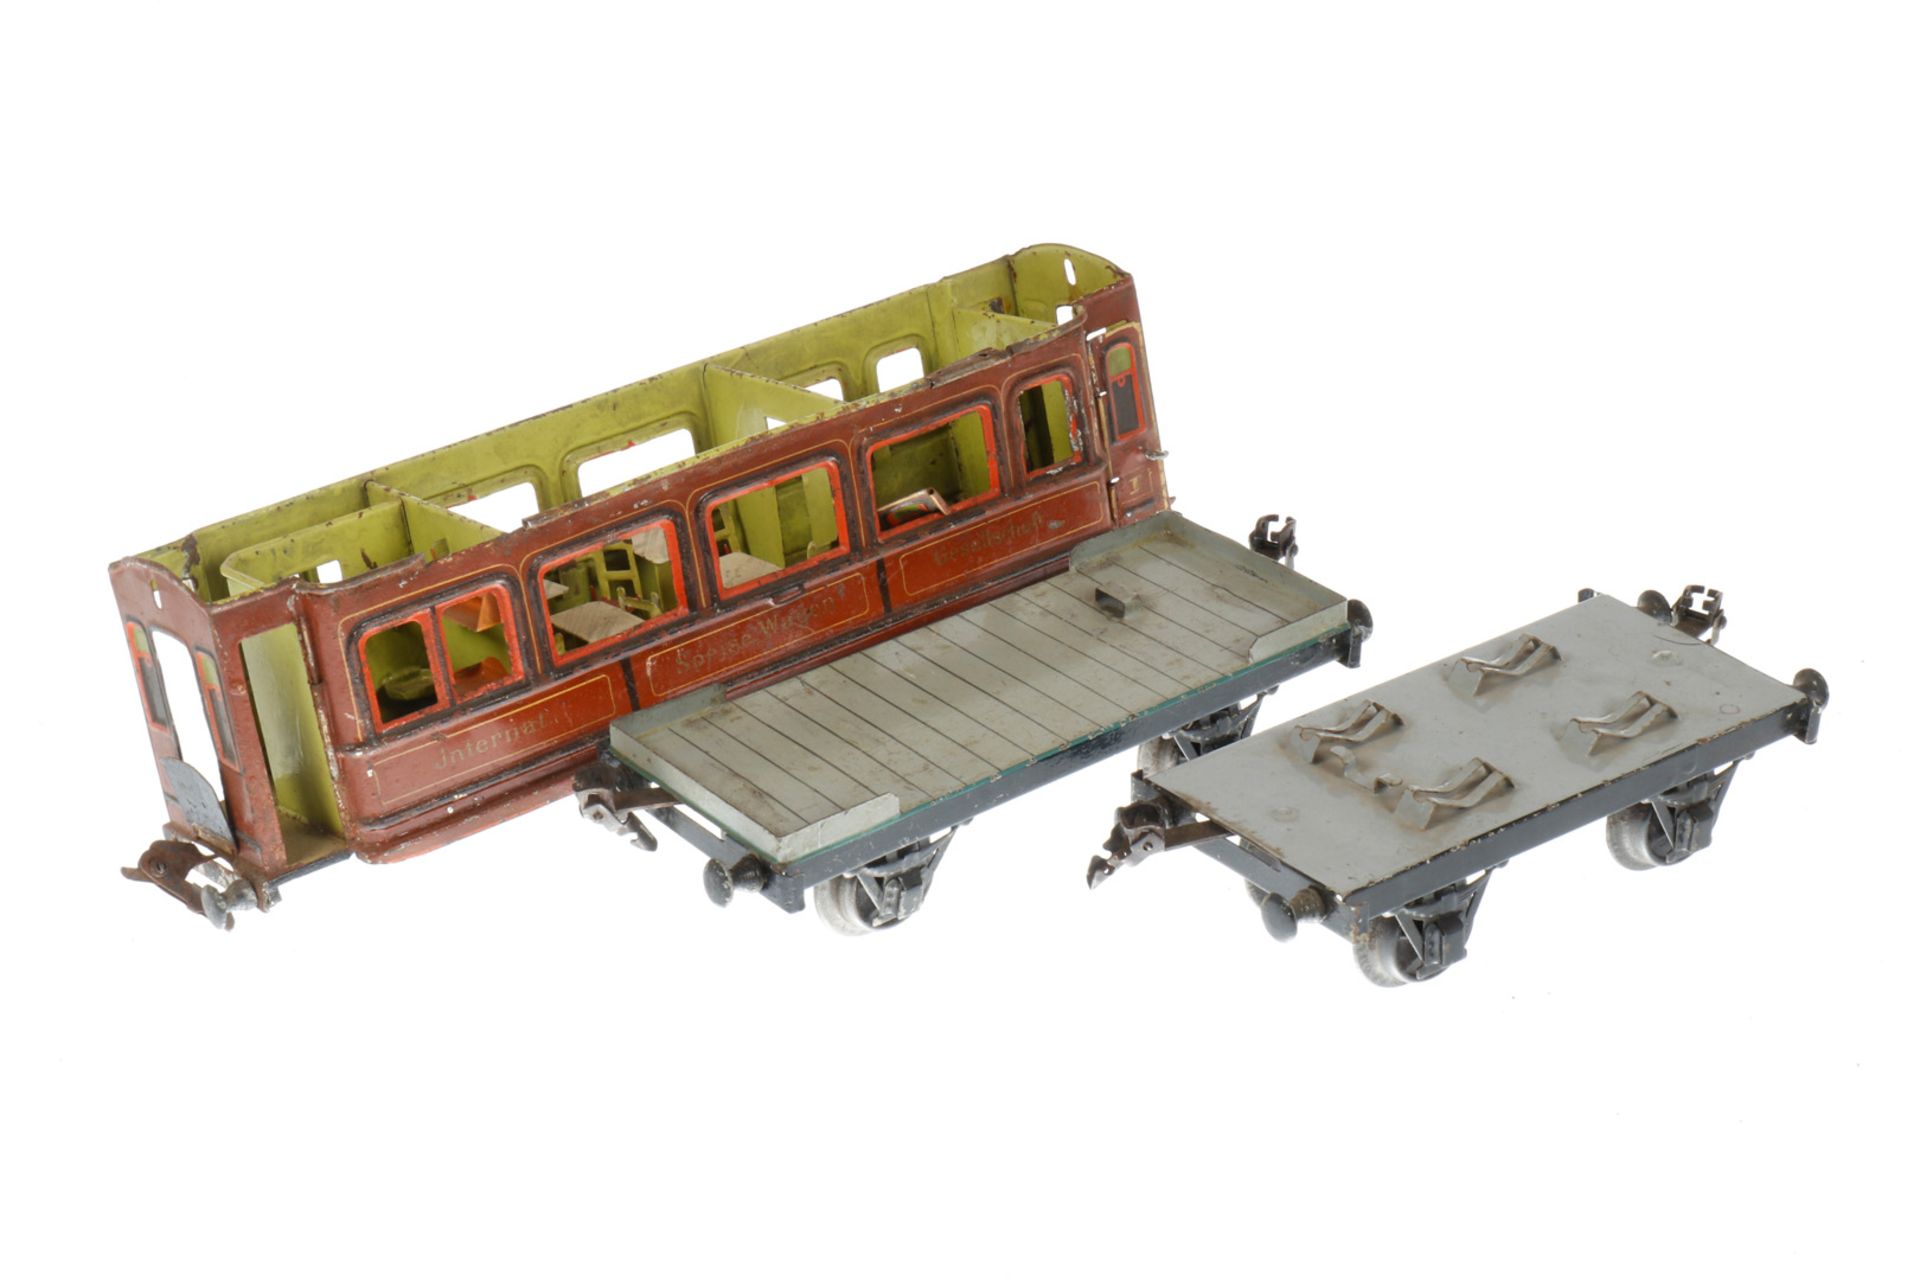 3 Teile von Märklin Spur-1-Wagen, uralt, darunter von Speisewagen, besch. und NV, L 18-32, als